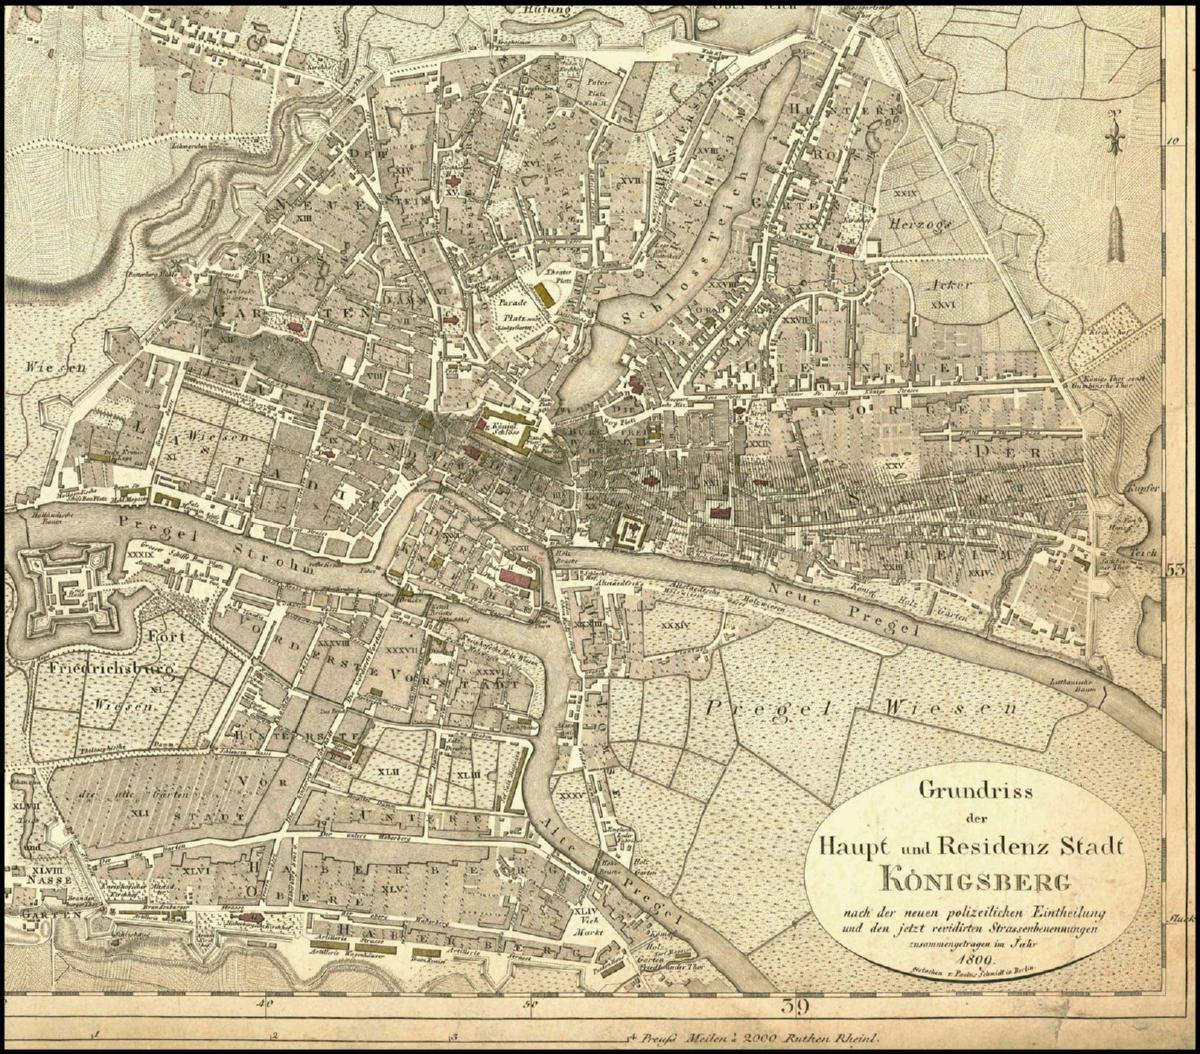 Grundriss der Haupt- und Residenzstadt Königsberg, nach neuerlicher Polizeilicher Einteilung, 1809